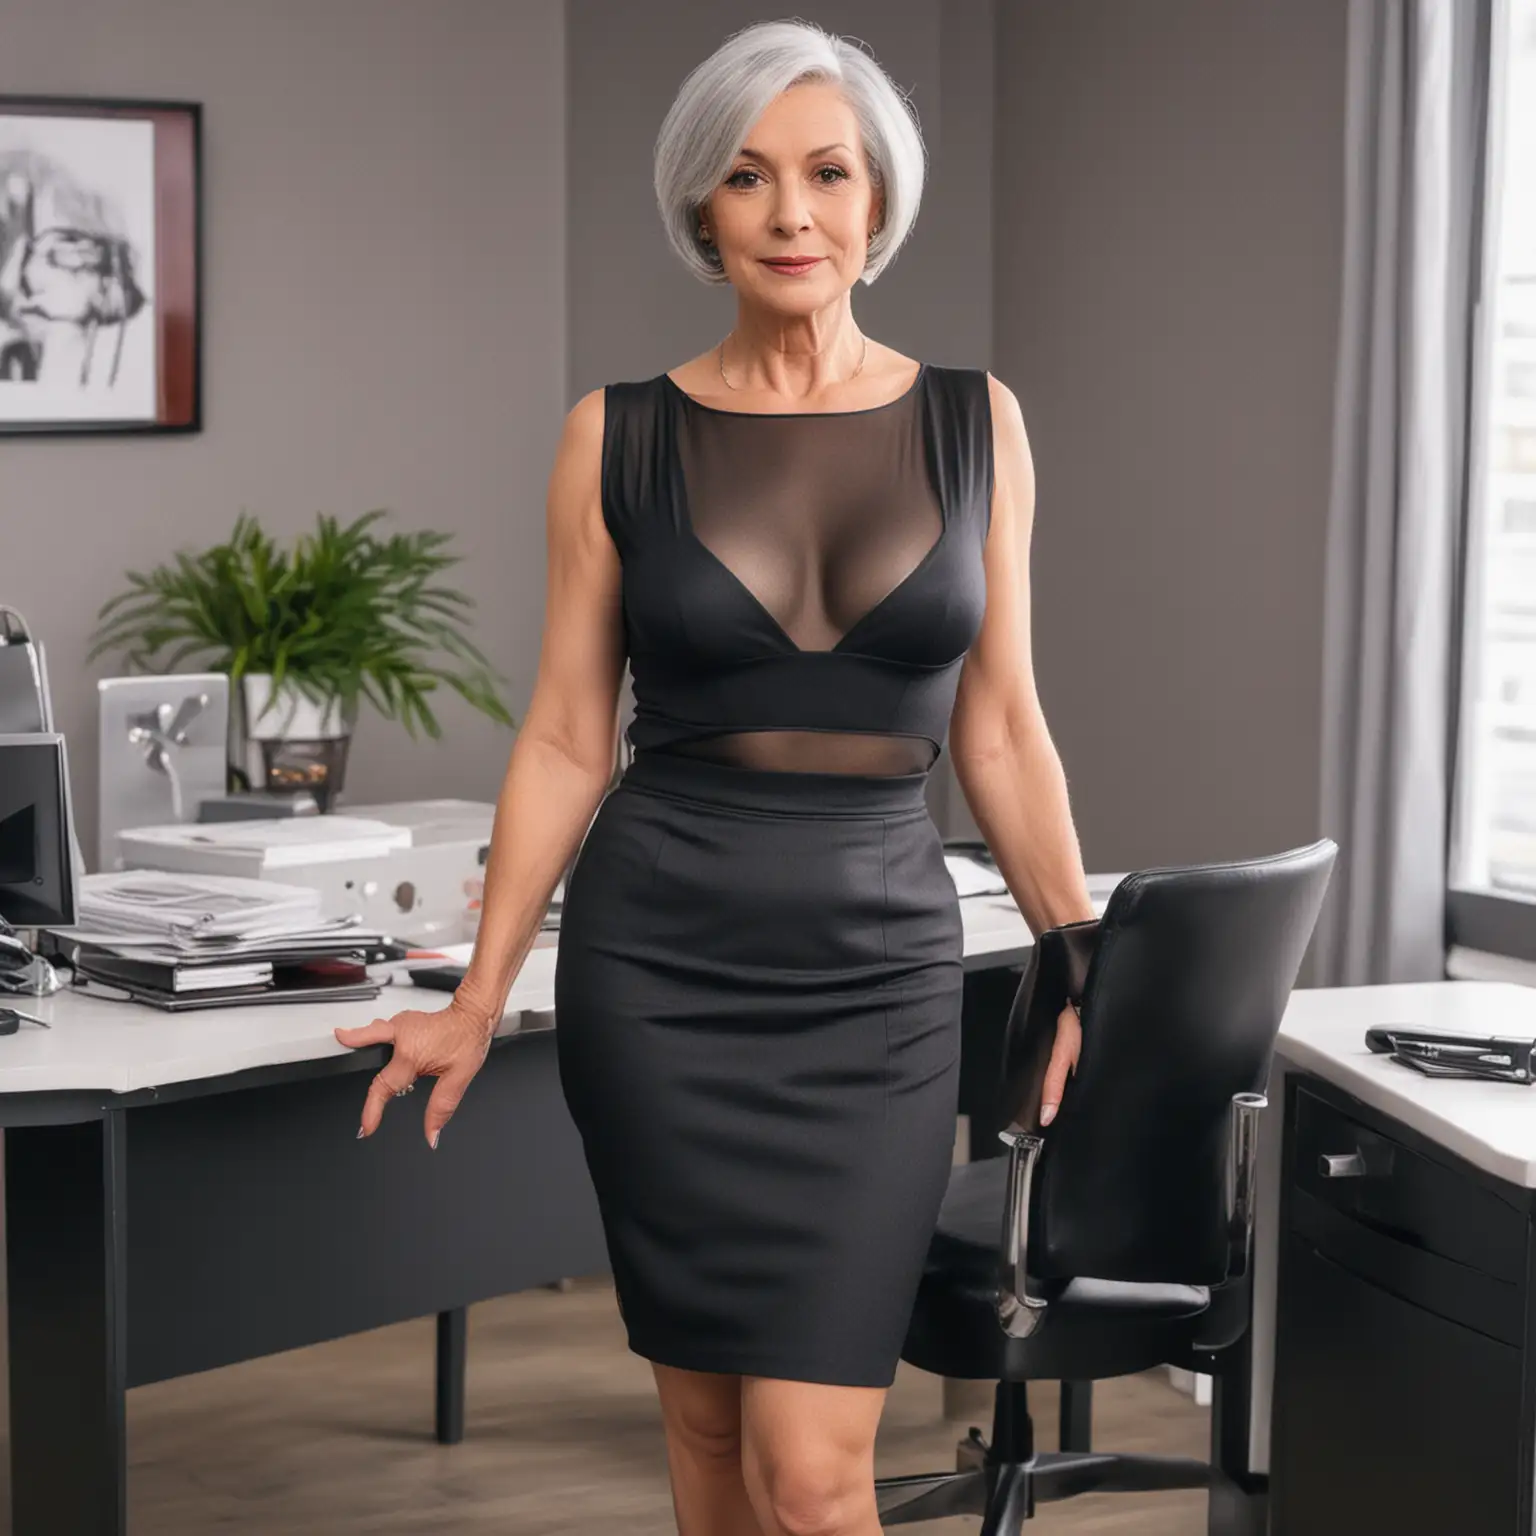 Elegant Mature Businesswoman in Chic Office Attire